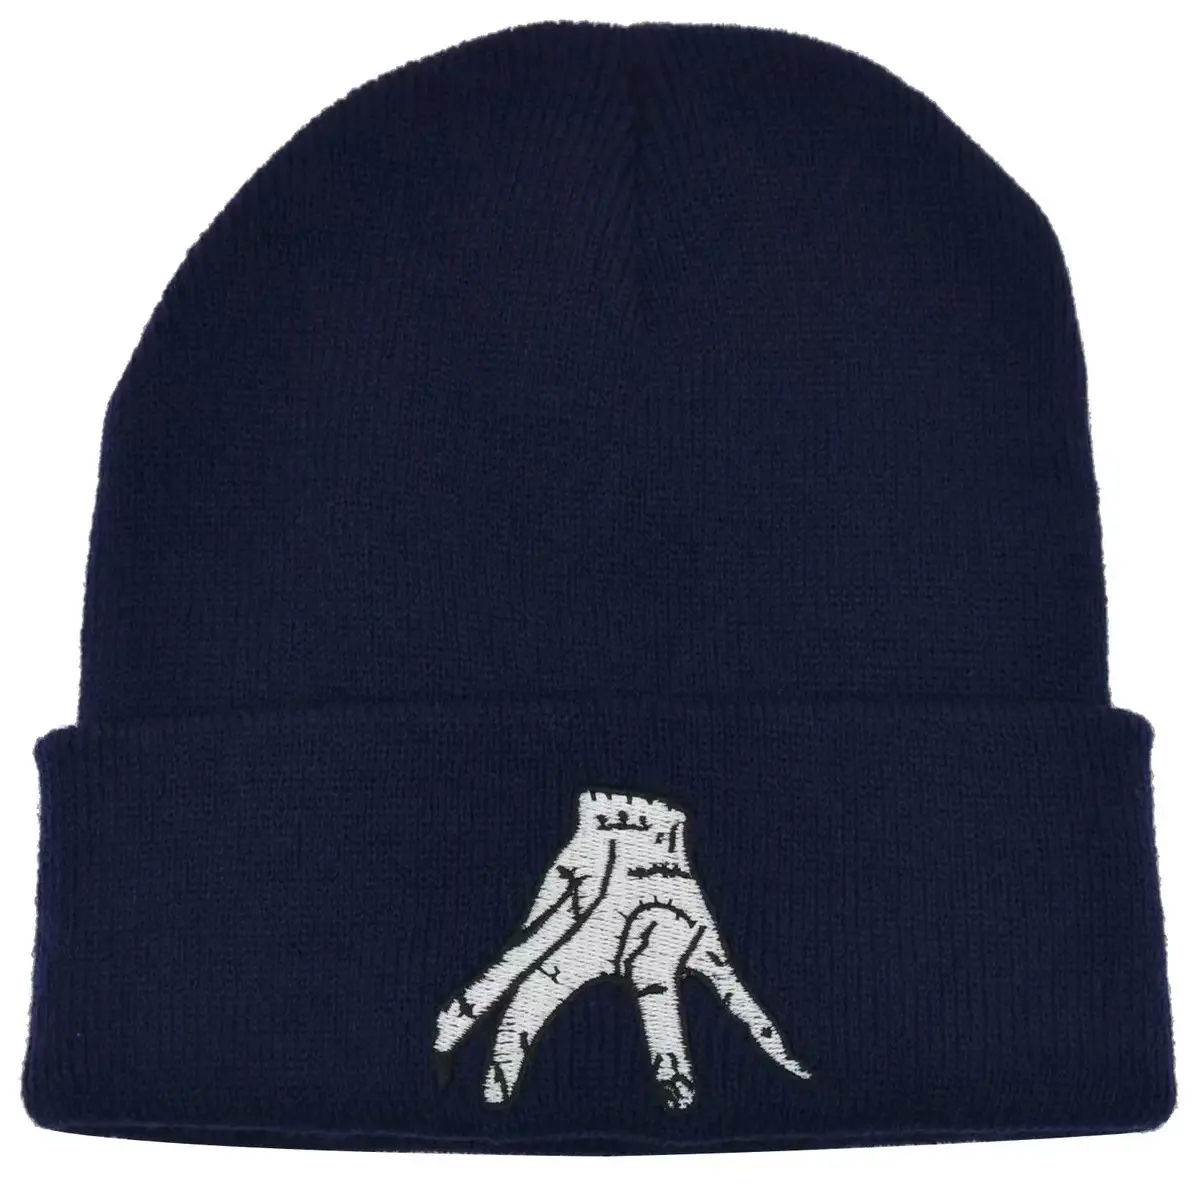 Amerikan yüksek sokak moda yetişkin örme şapka şapka özel işlemeli logo örme bere şapka